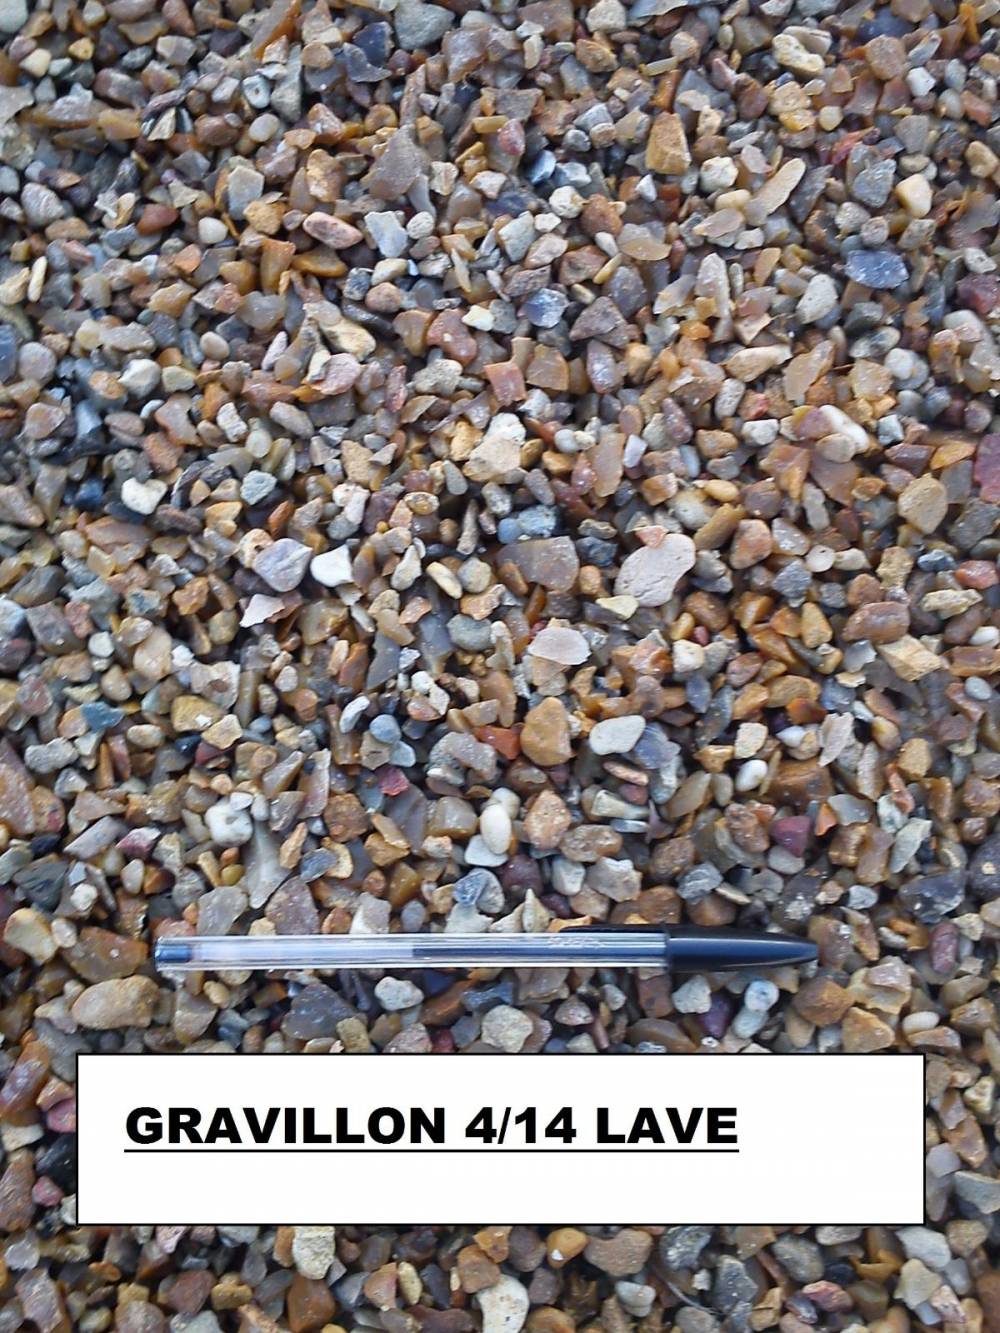 Gravillon 4/14 lave